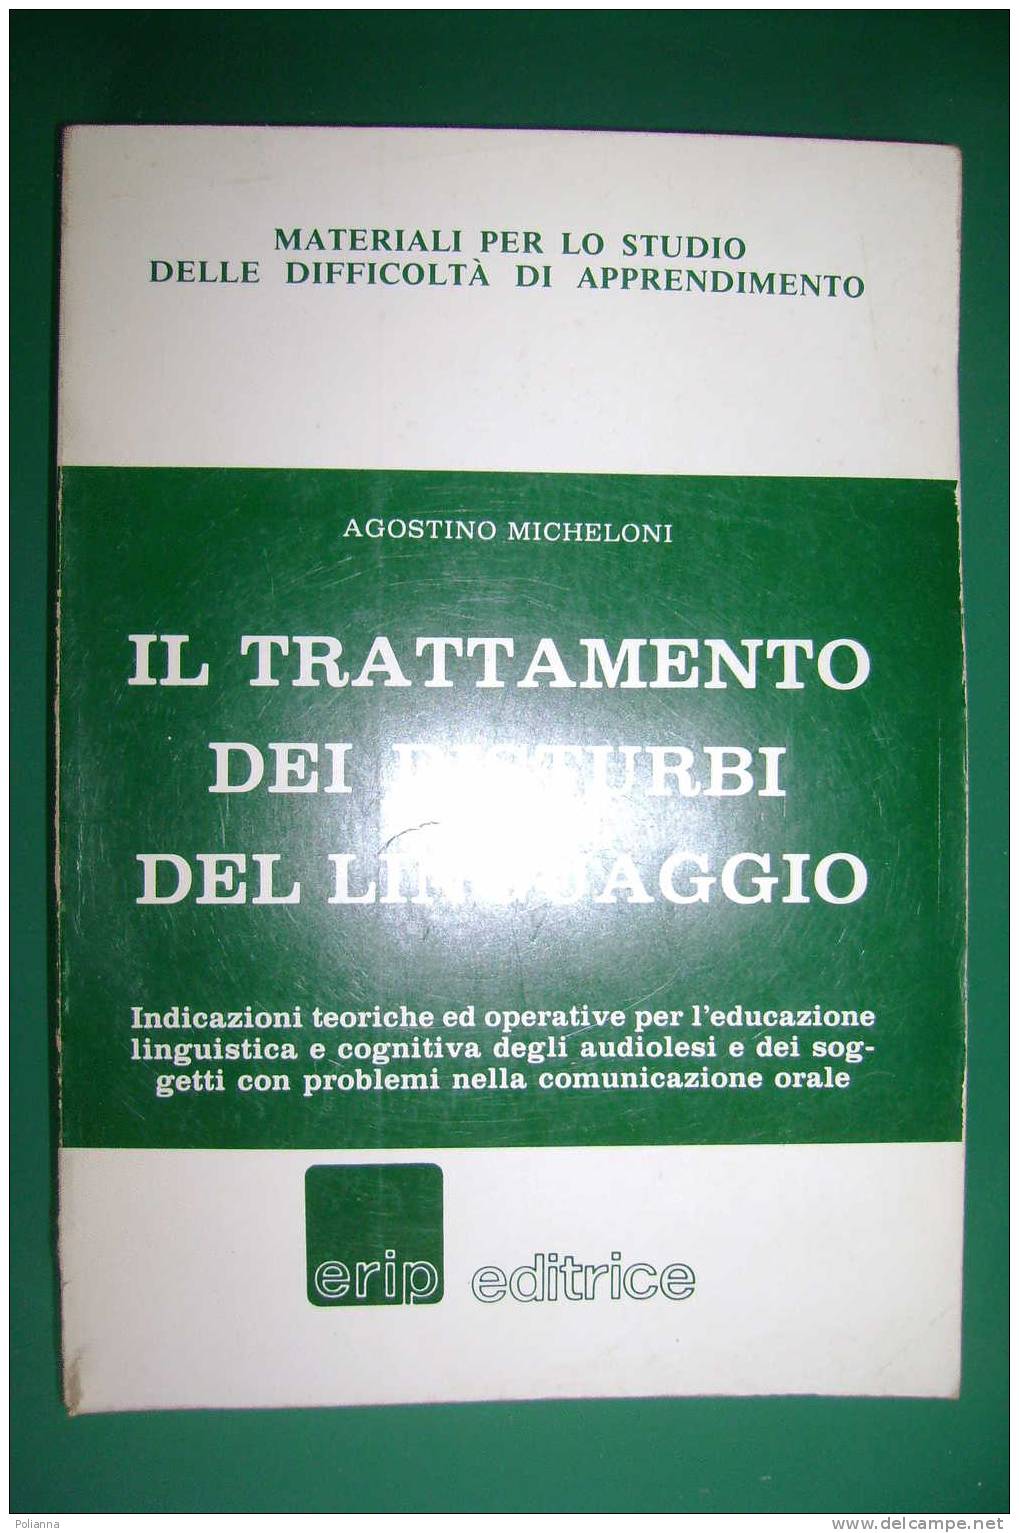 PDW/29 Micheloni TRATTAMENTO DISTURBI LINGUAGGIO Erip 1984 - Medicina, Psicología